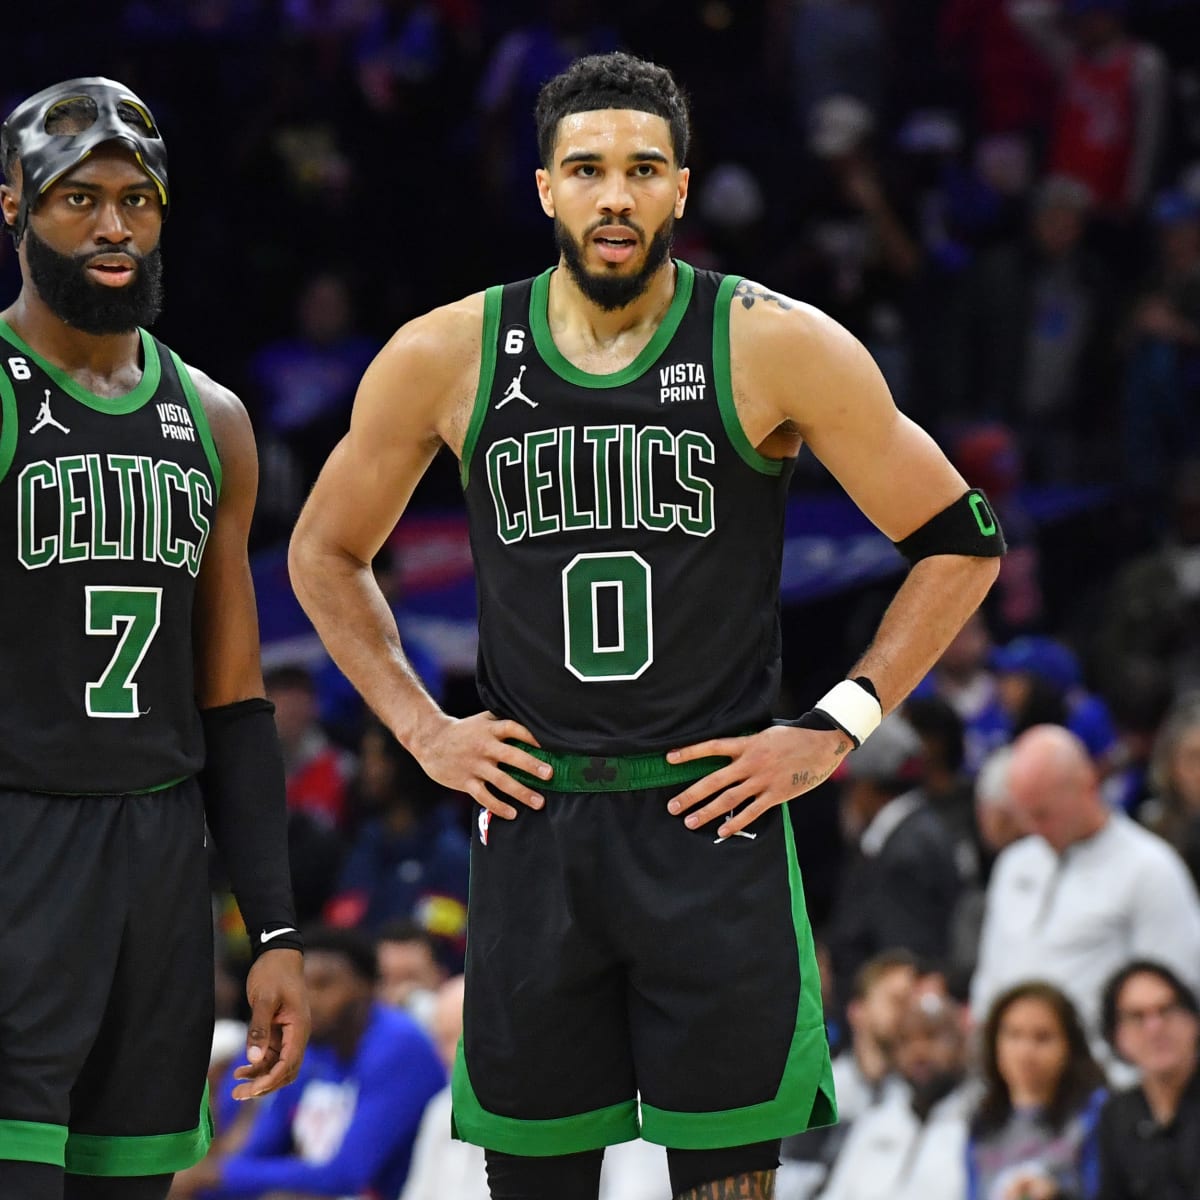 tatum: Boston Celtics' Jayson Tatum says 'we didn't accomplish